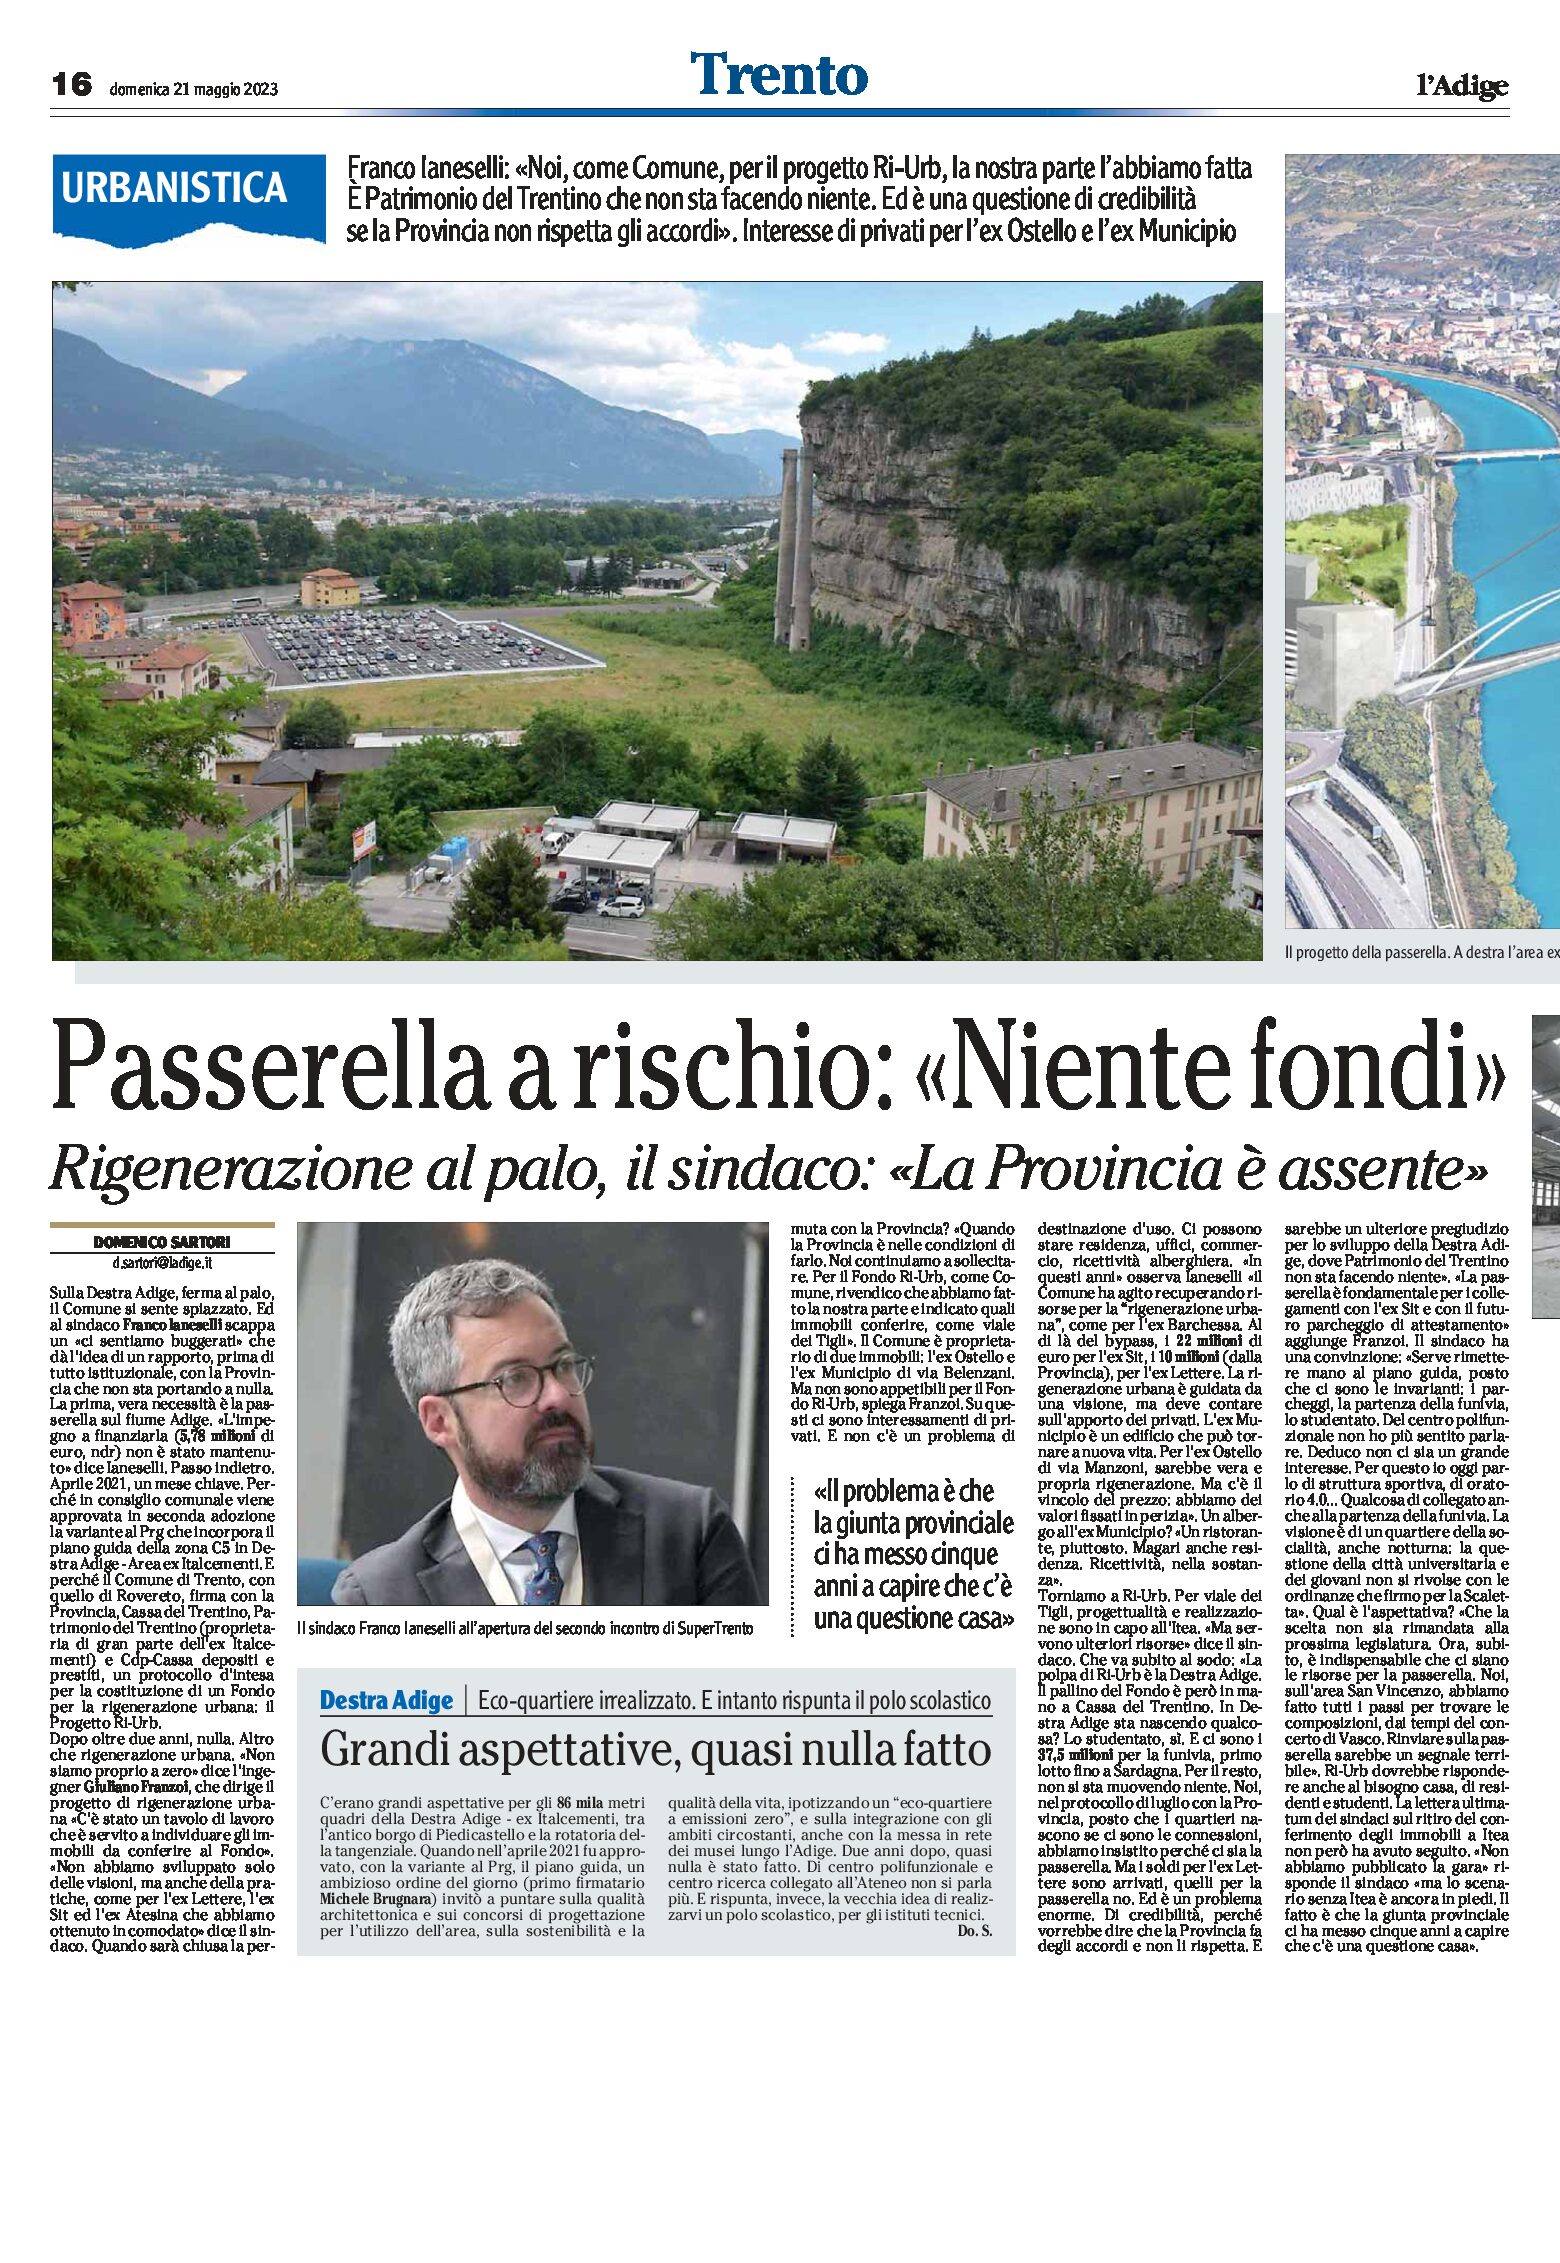 Trento: rigenerazione al palo, il sindaco “la Provincia è assente”